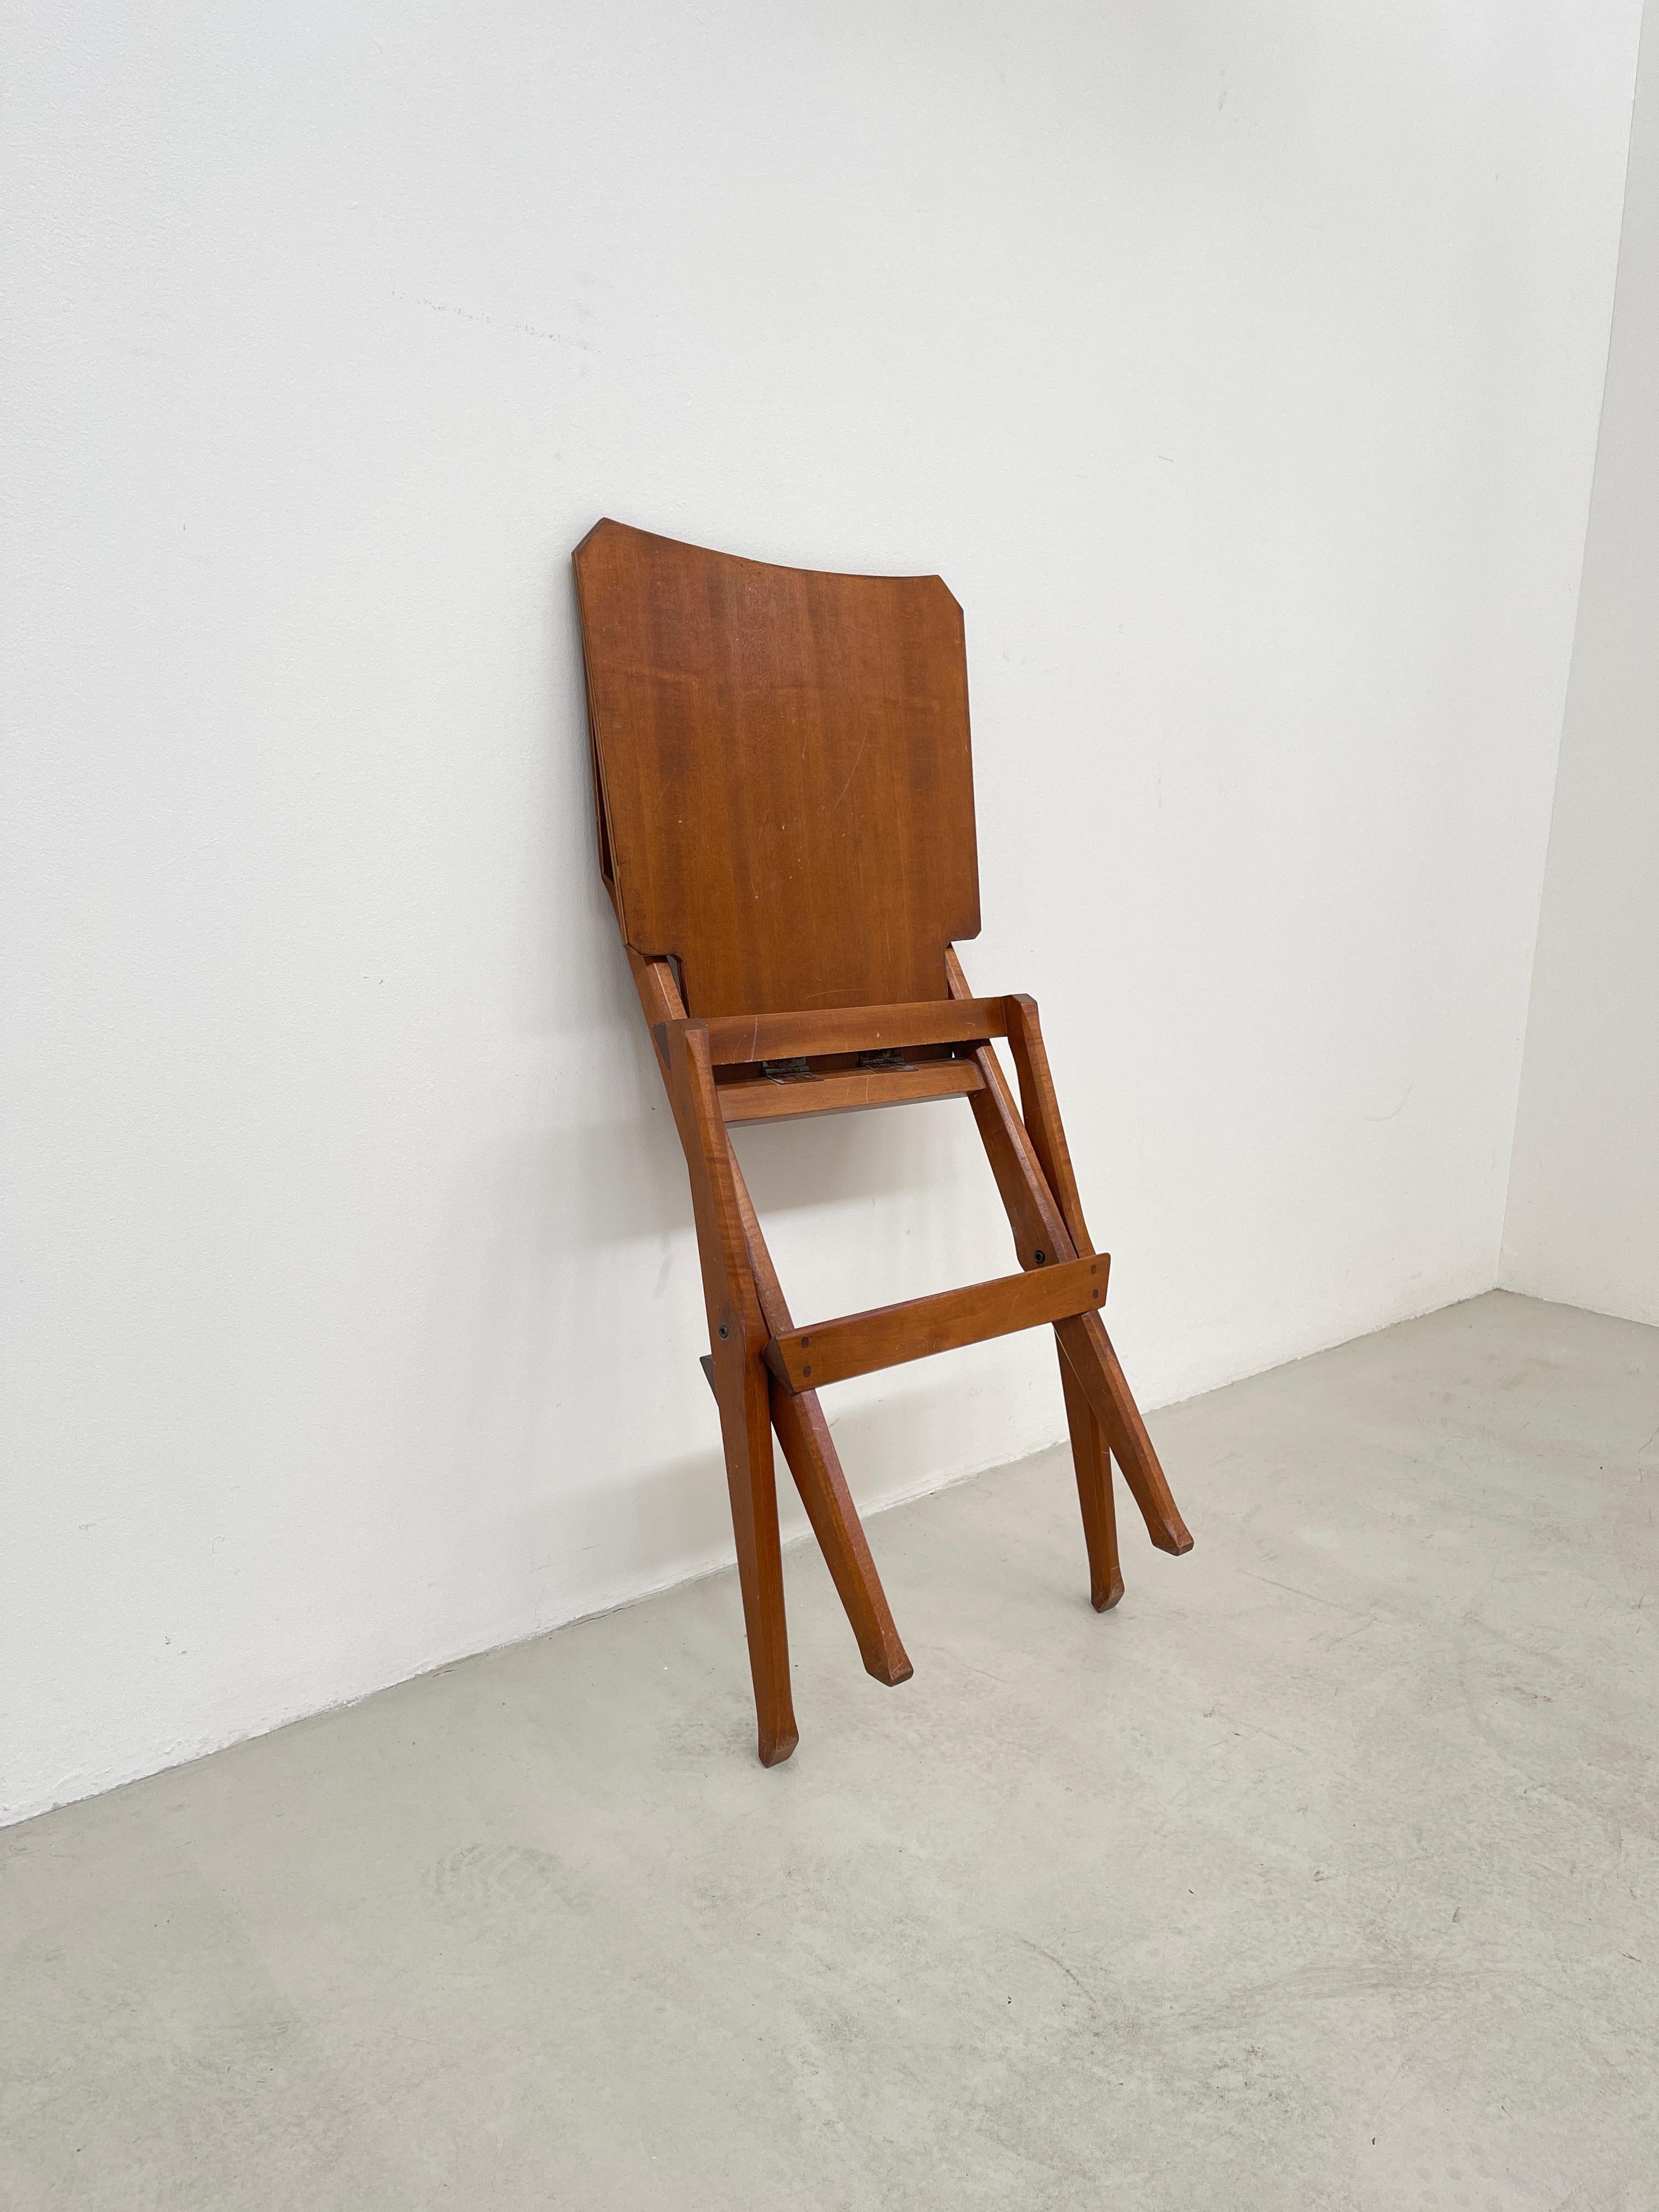 FRANCO ALBINI for POGGI Folding chair In Good Condition For Sale In Baranzate, IT